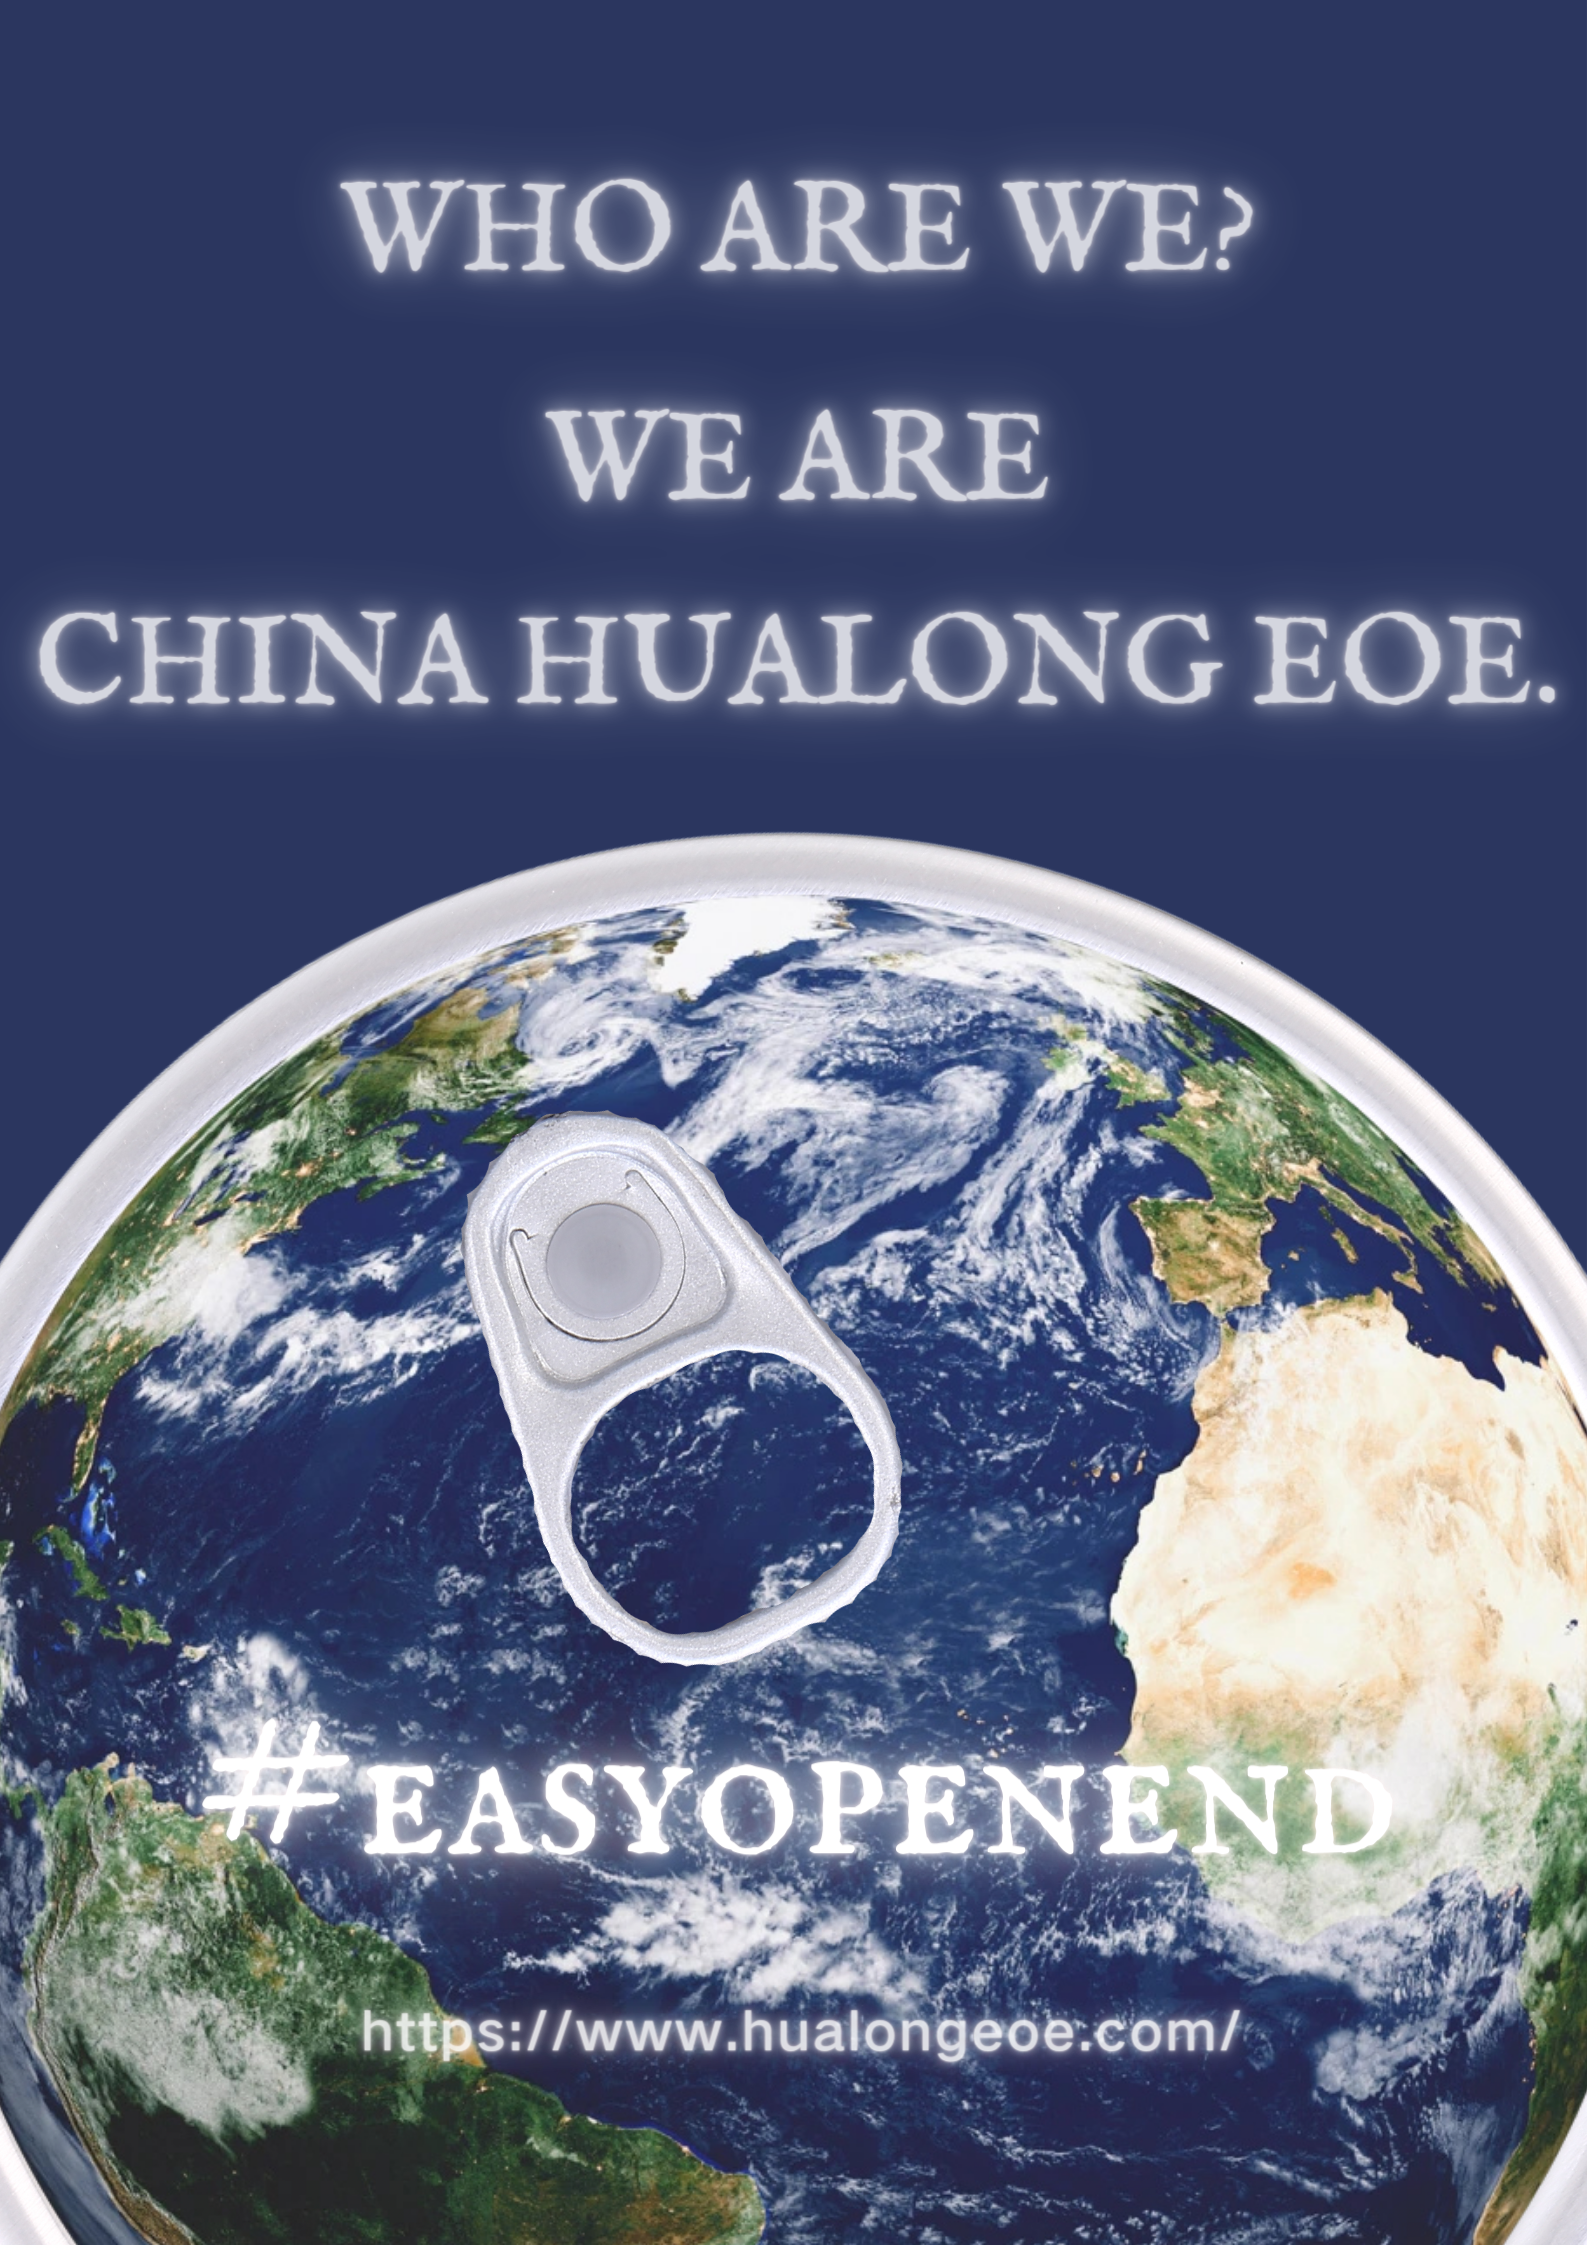 Hualong EOE: Faak stelde fragen